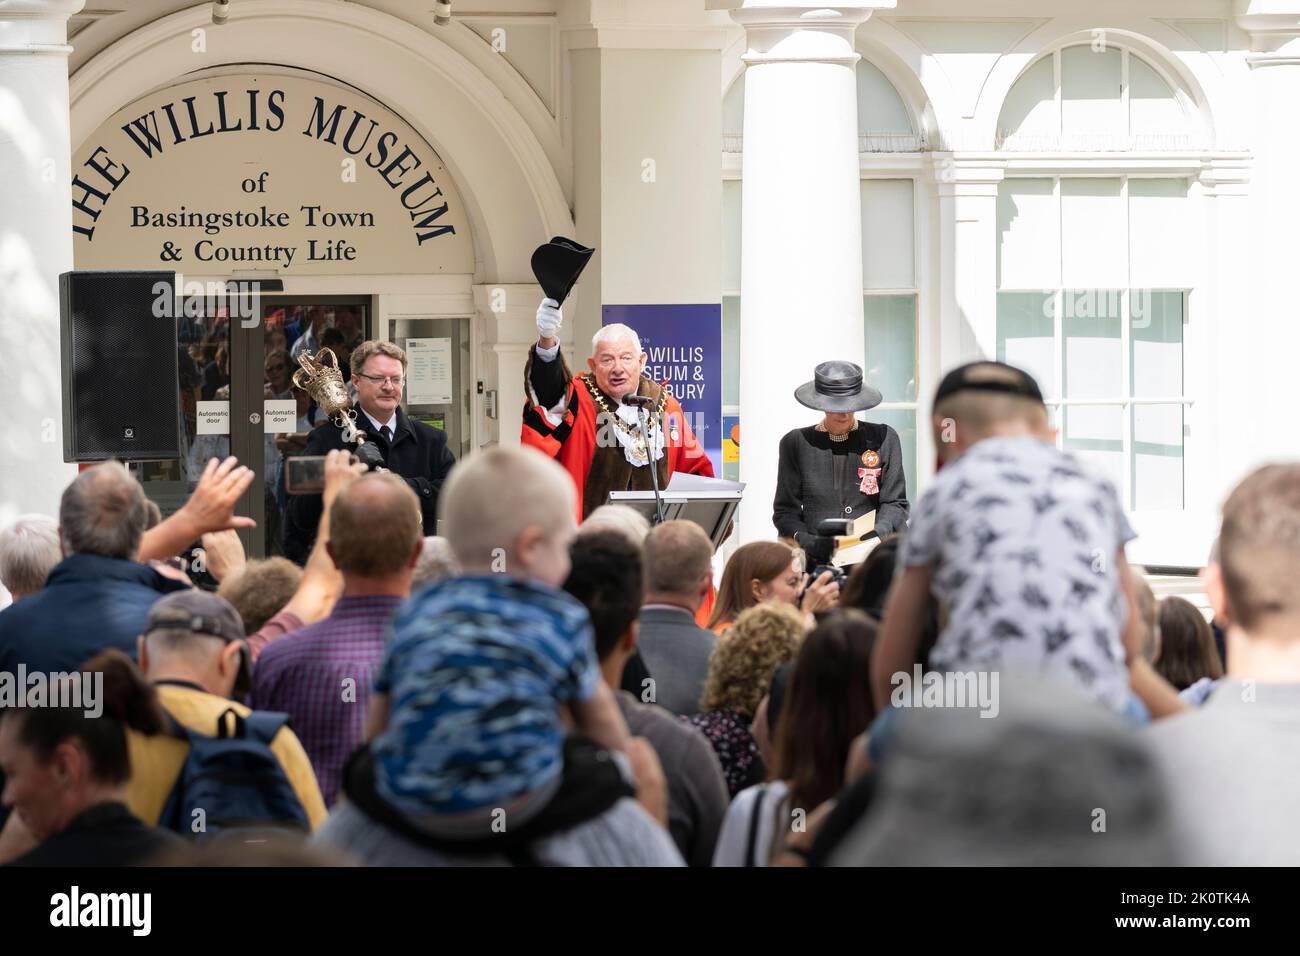 El alcalde de Basingstoke, el concejal Paul Miller, alzando su sombrero a una multitud y animando la adhesión del rey Carlos III al trono. Inglaterra Foto de stock